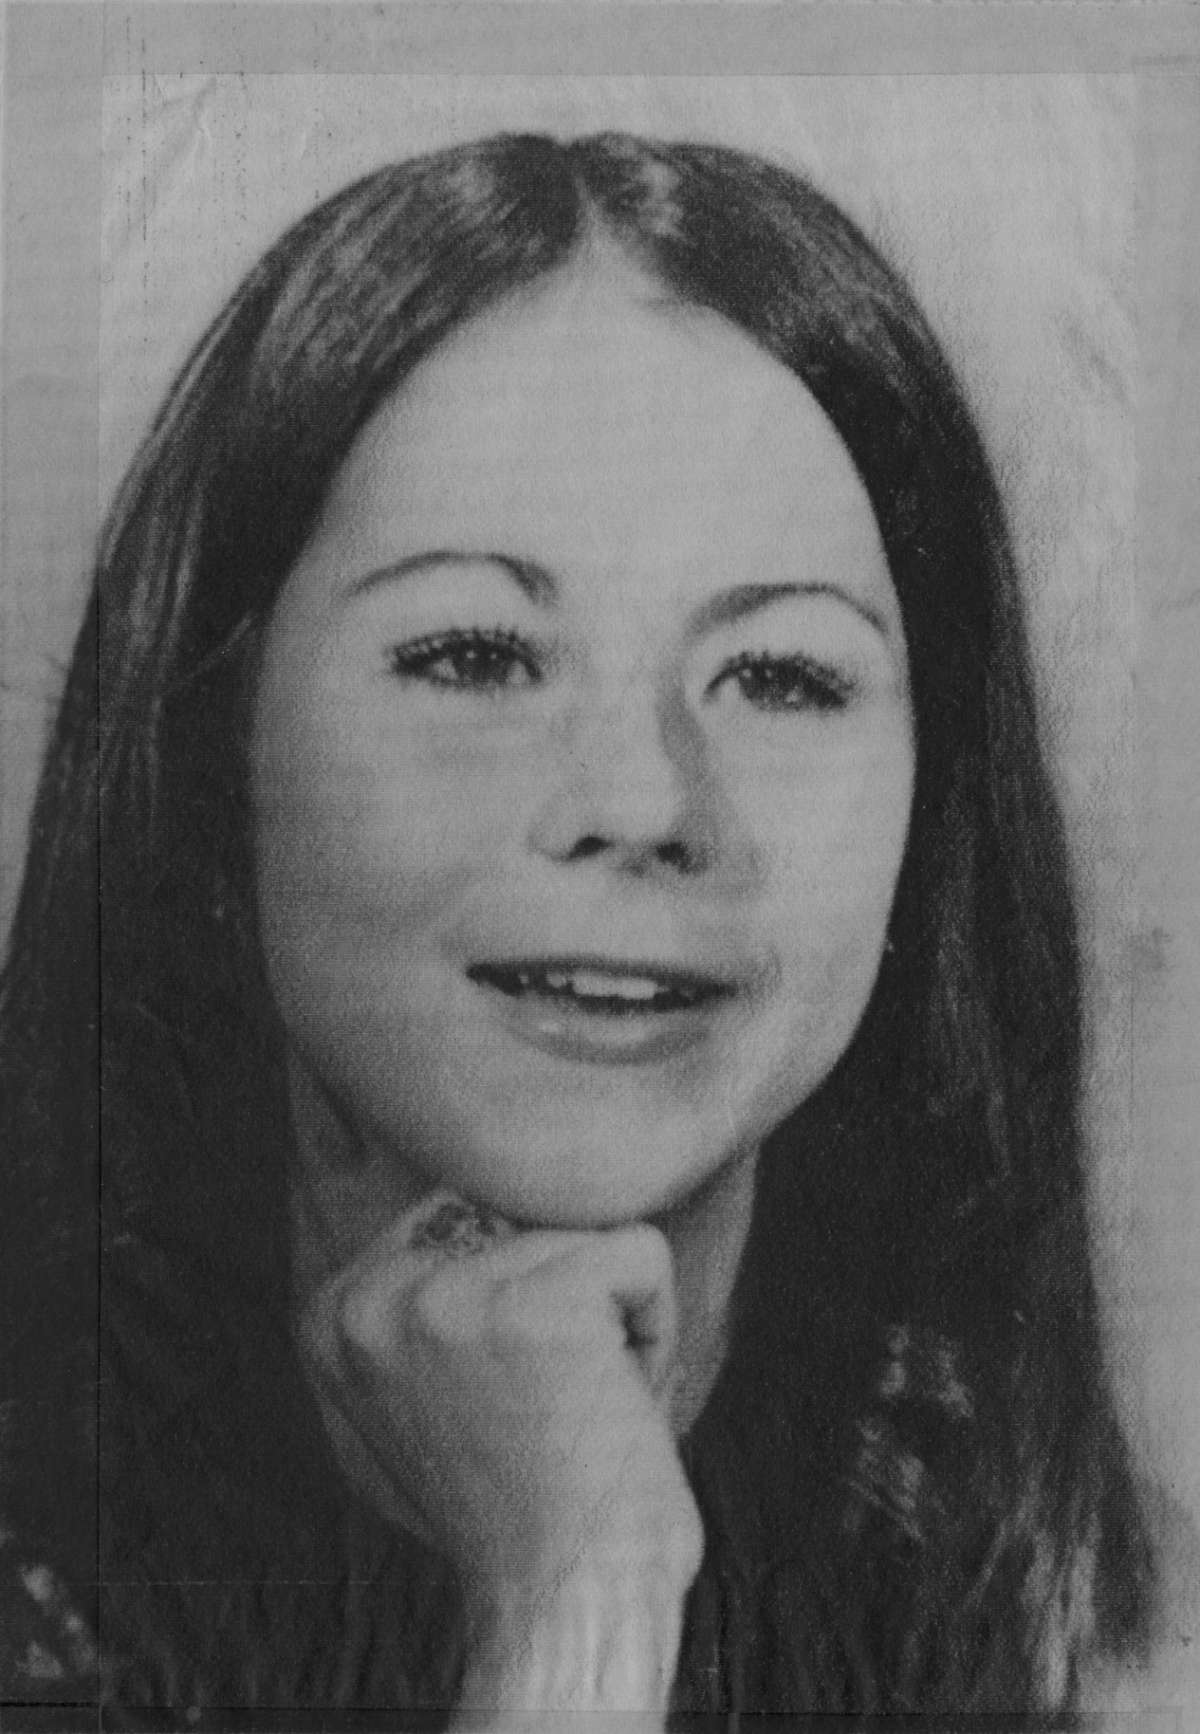 Debbie Ackerman et Maria Johnson deux meilleurs amis de 15 ans originaires de Galveston, ont disparu en novembre. 17, 1971